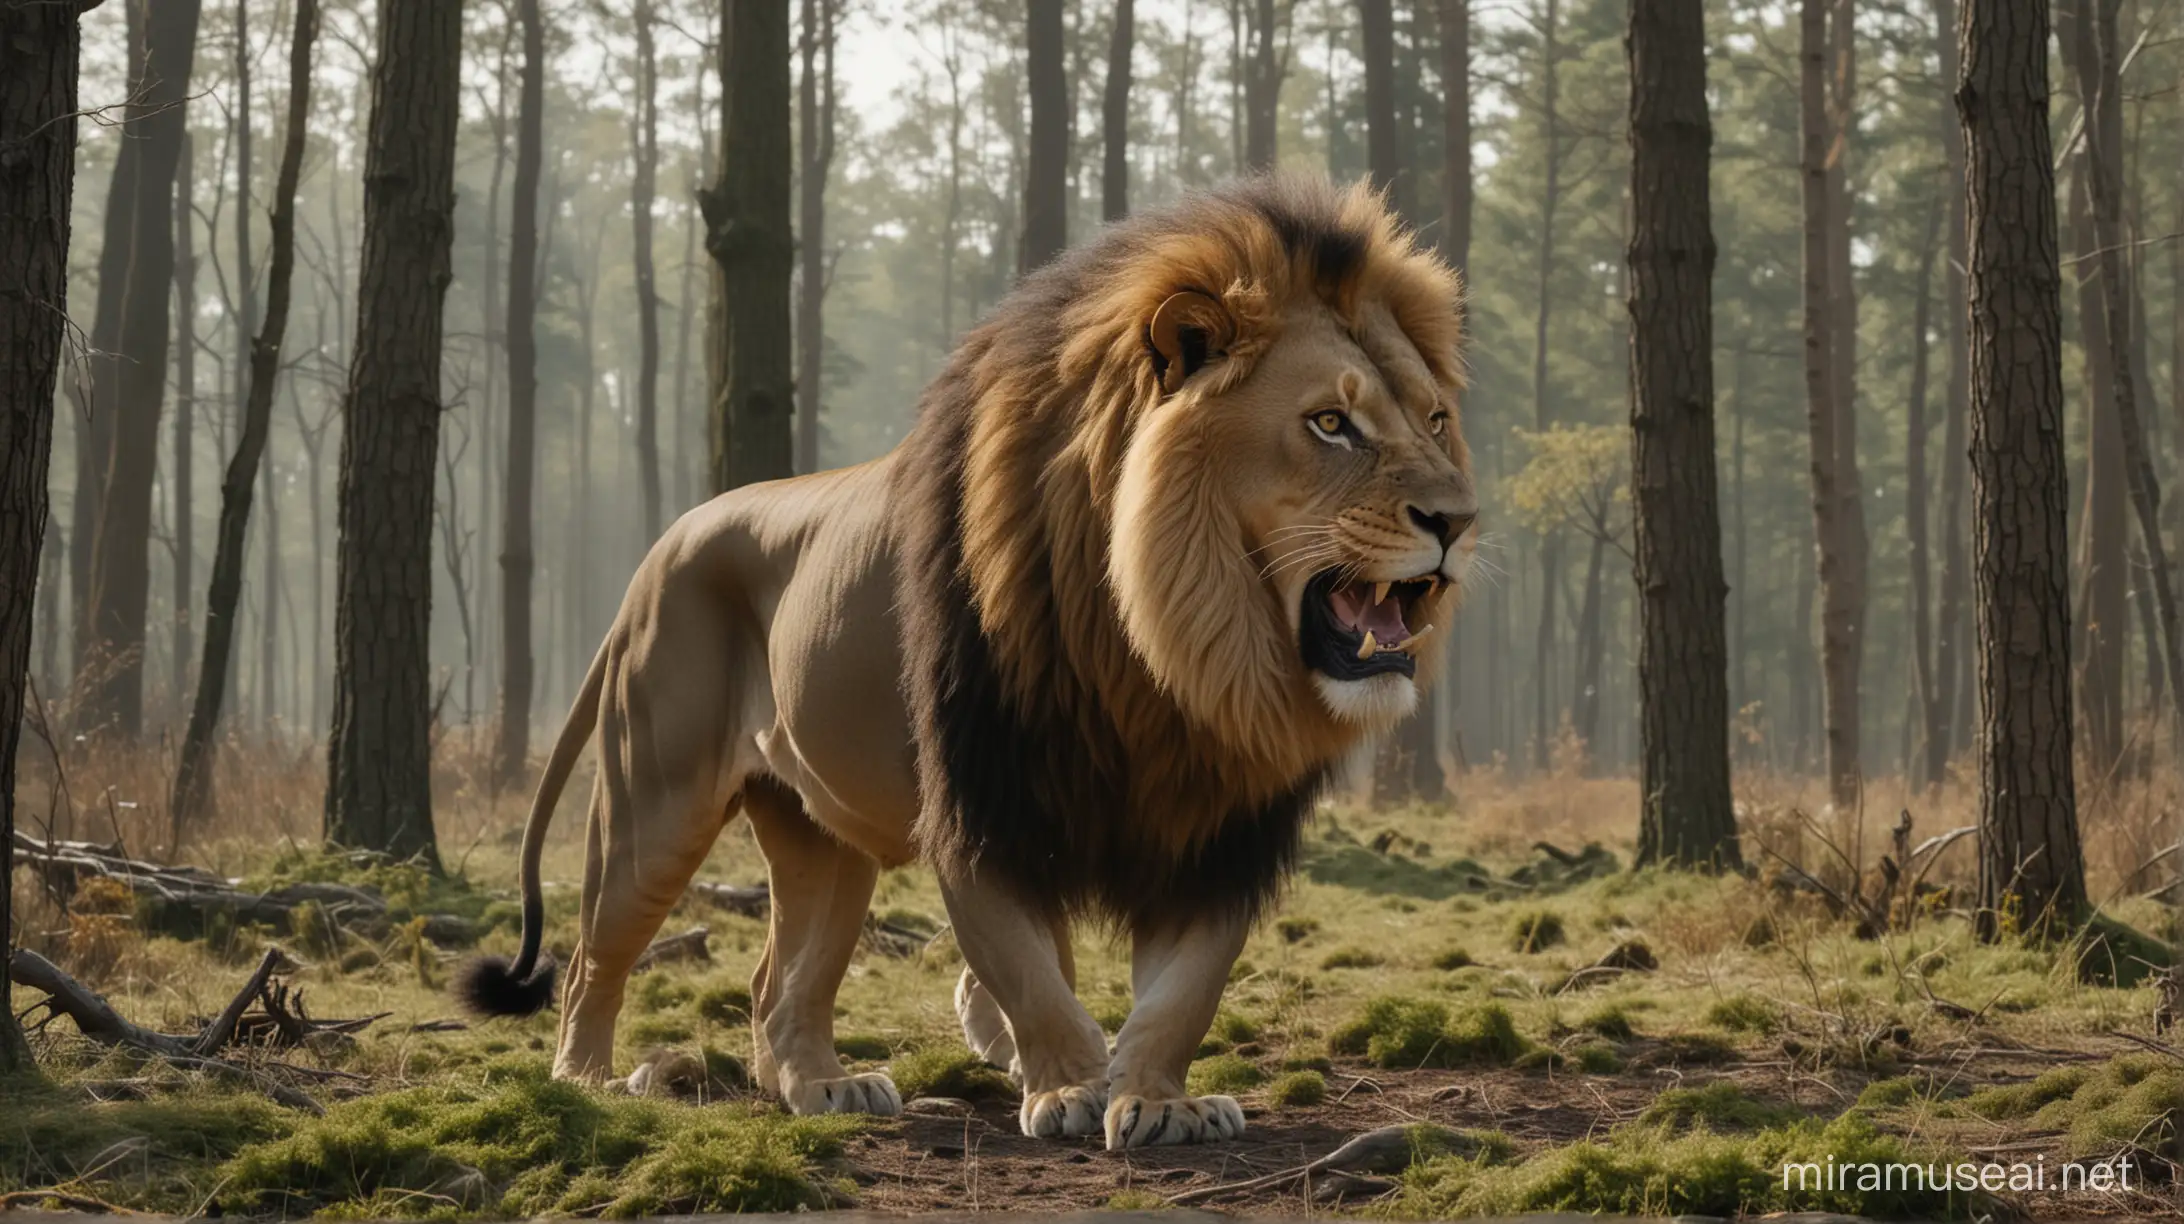 Majestic Lion Roaring in Enchanting Forest Scene